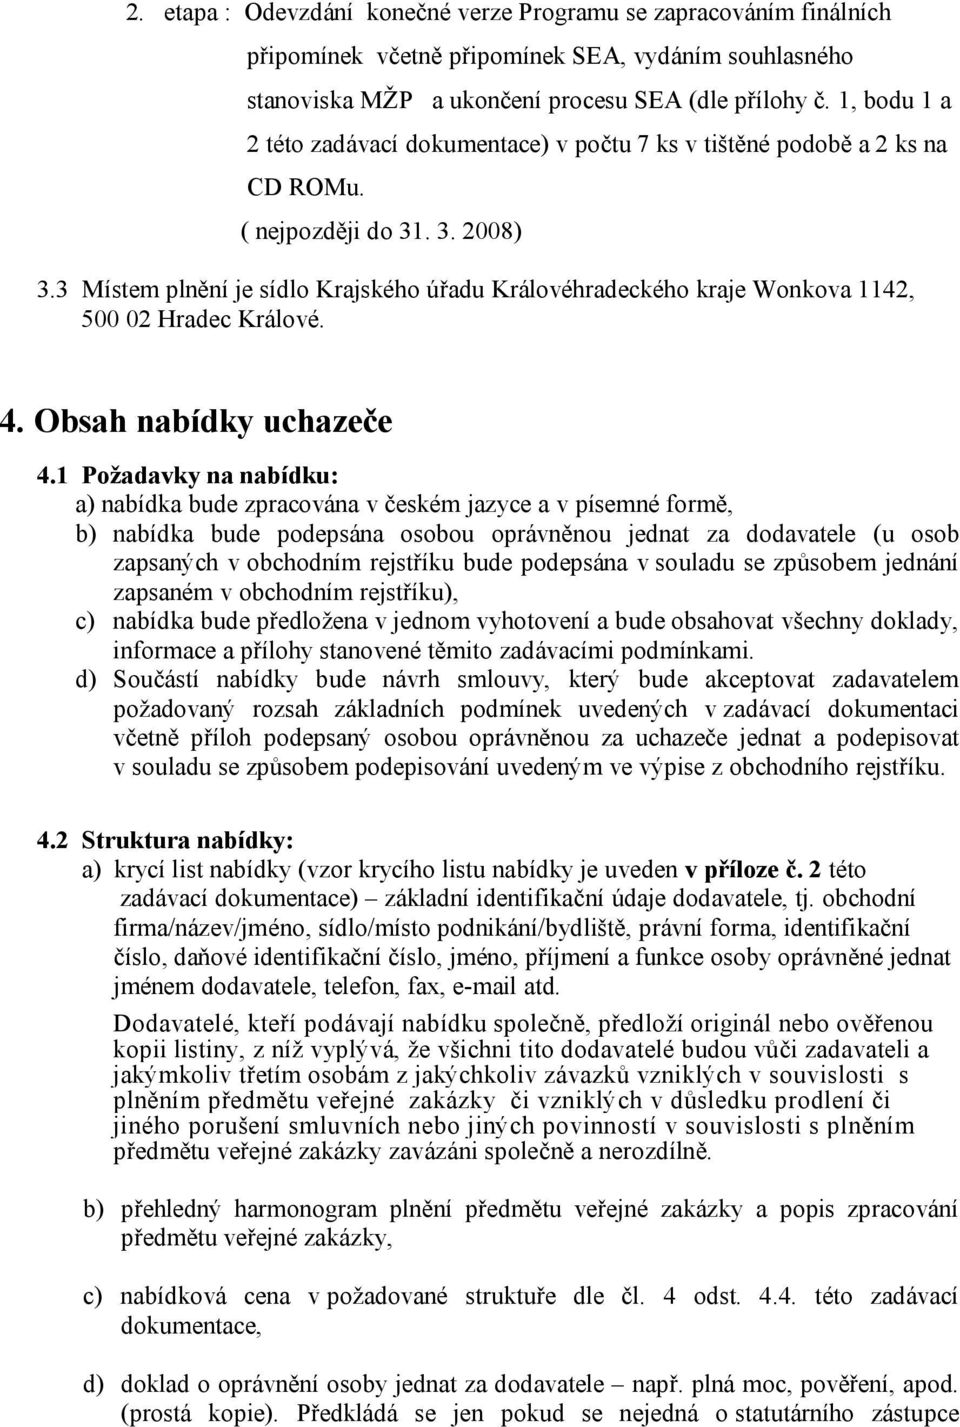 3 Místem plnění je sídlo Krajského úřadu Královéhradeckého kraje Wonkova 1142, 500 02 Hradec Králové. 4. Obsah nabídky uchazeče 4.